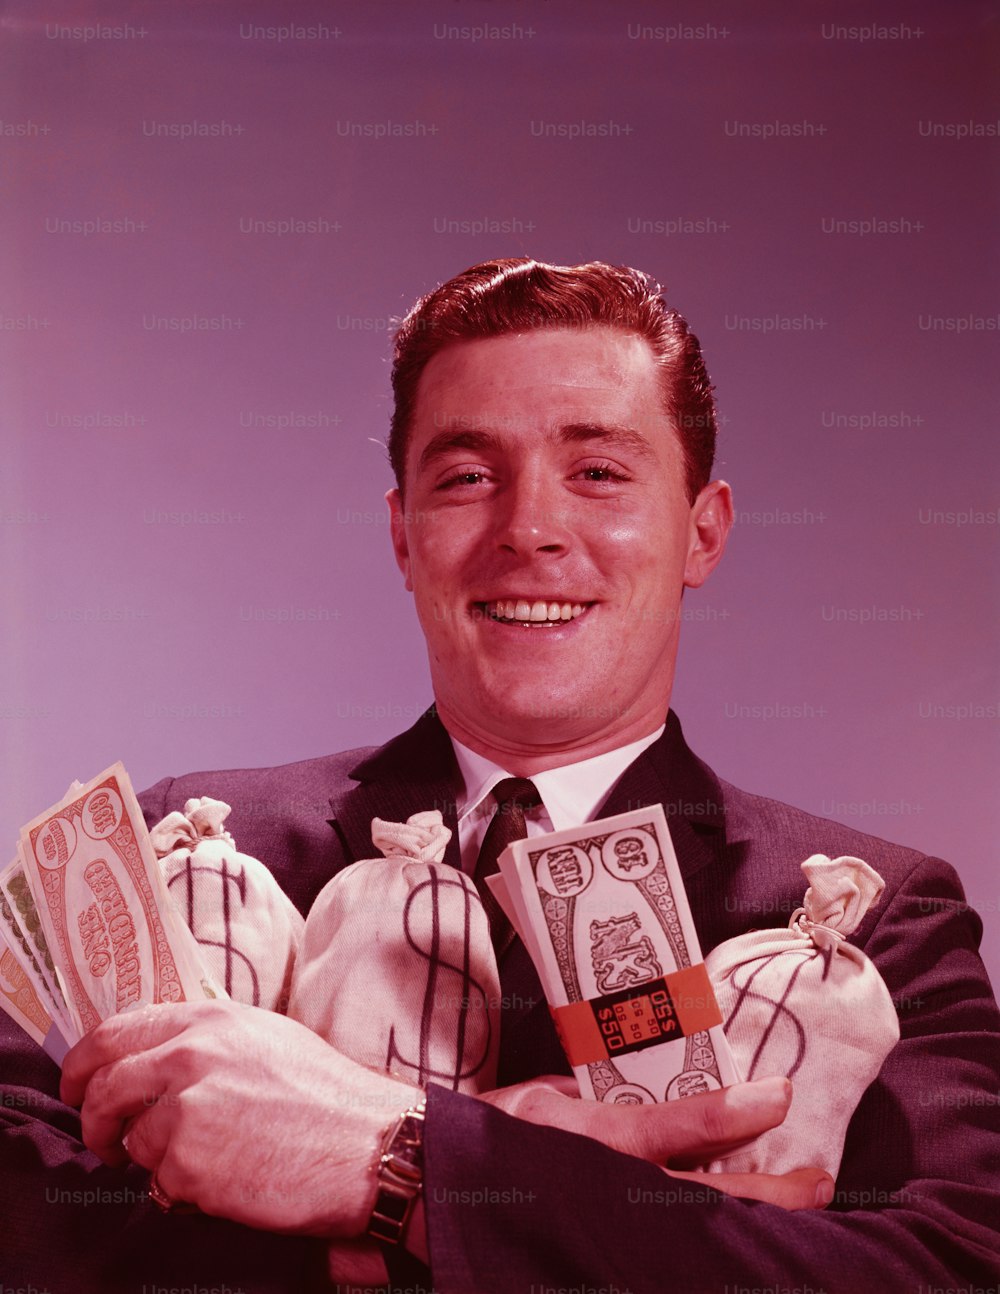 STATI UNITI - CIRCA 1960: Uomo che tiene fasci e borse di denaro, sorridente, ritratto.